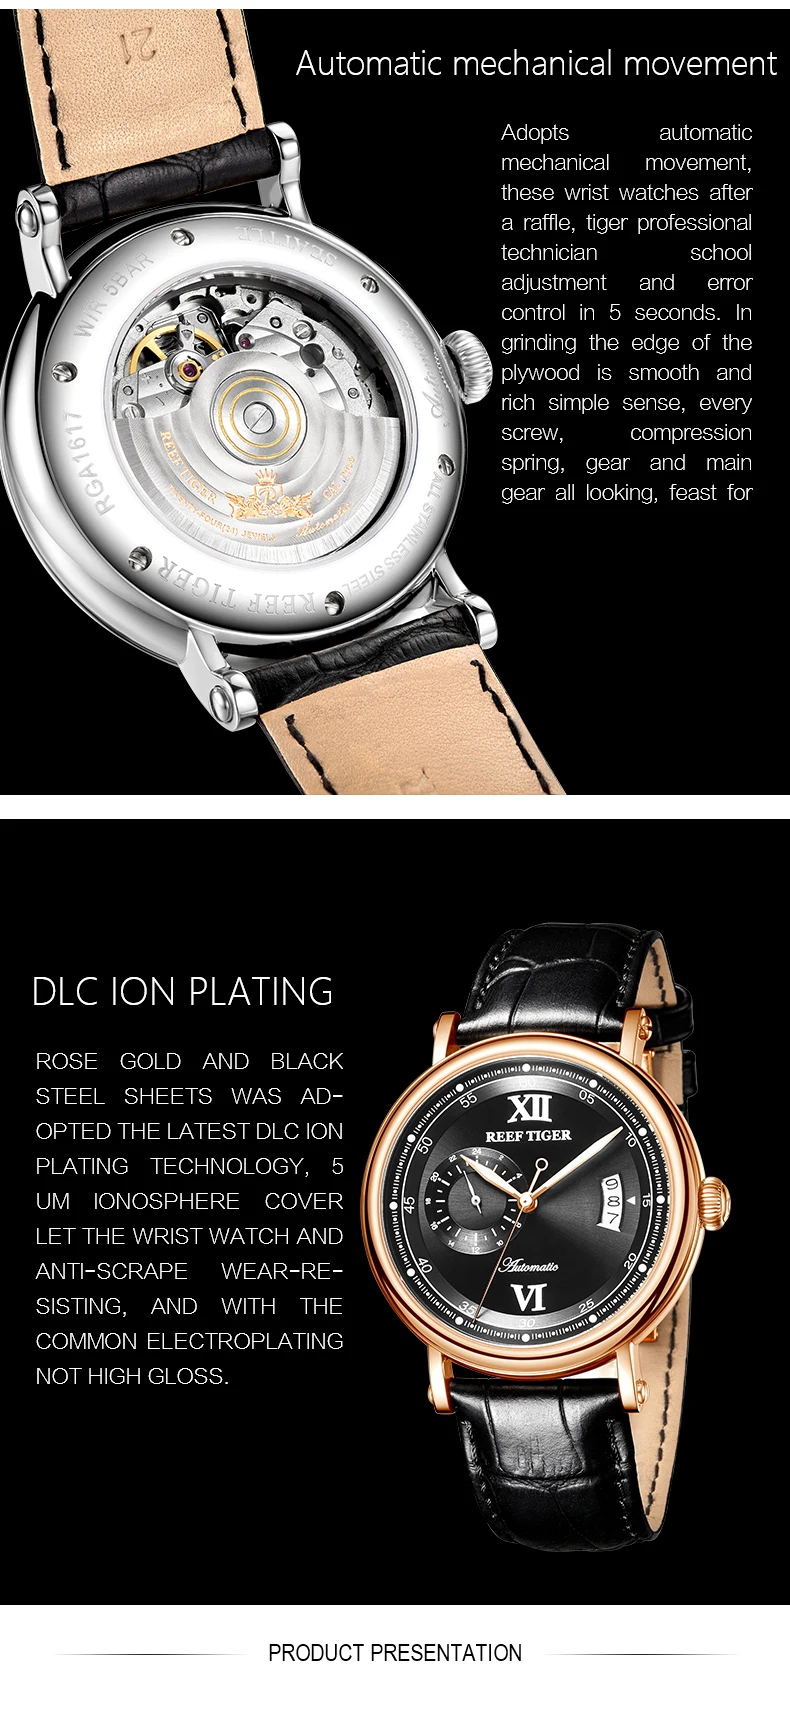 Reef Tiger/RT роскошные часы, мужские креативные часы, новинка, розовое золото, автоматические часы, большая дата, синие аналоговые часы, 5 бар, RGA1617-2